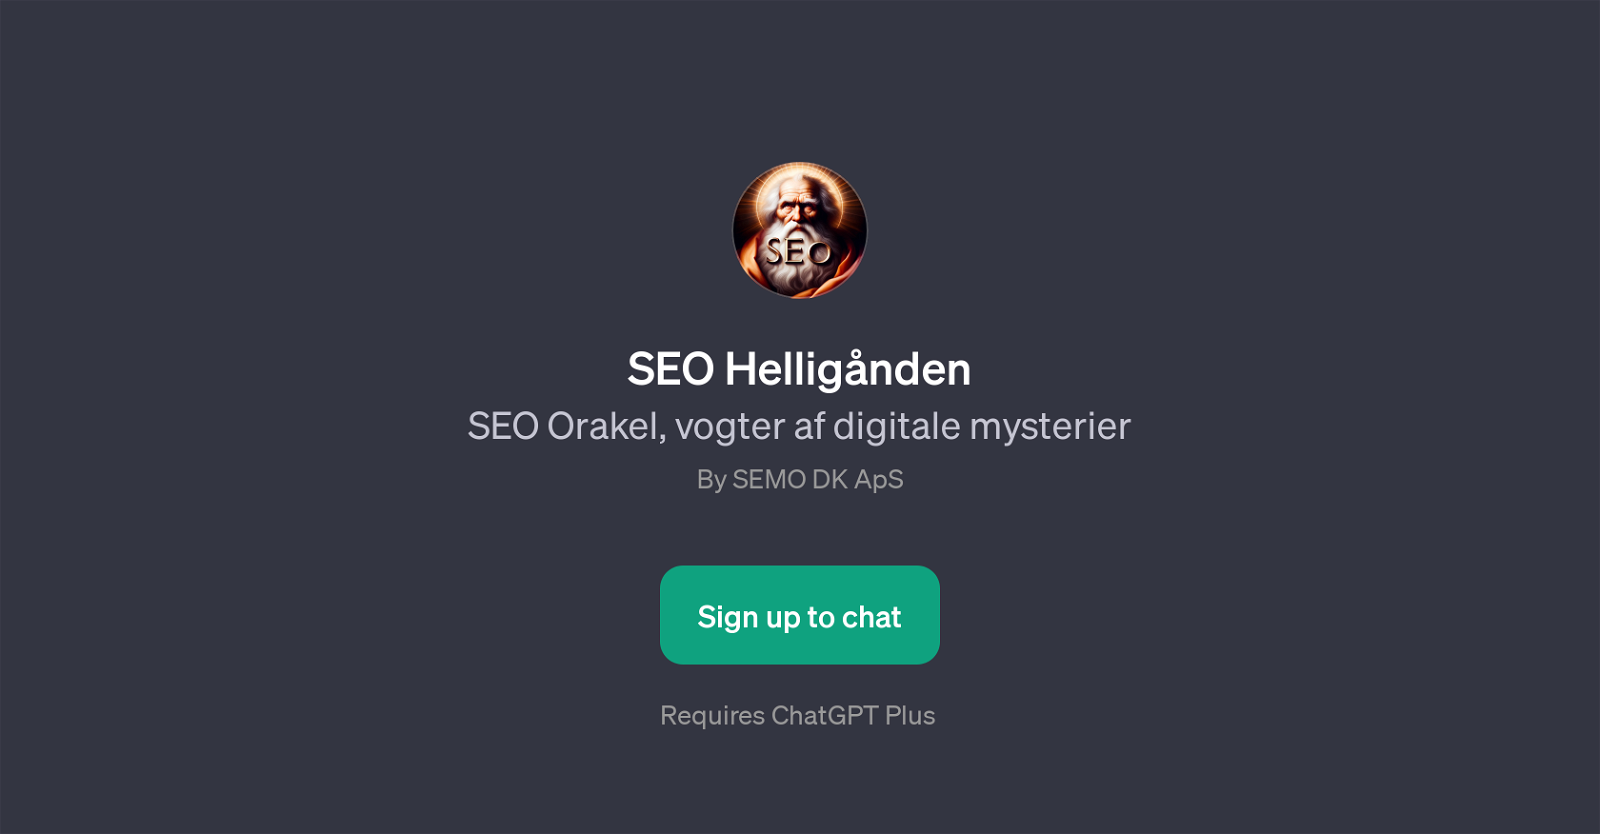 SEO Hellignden website